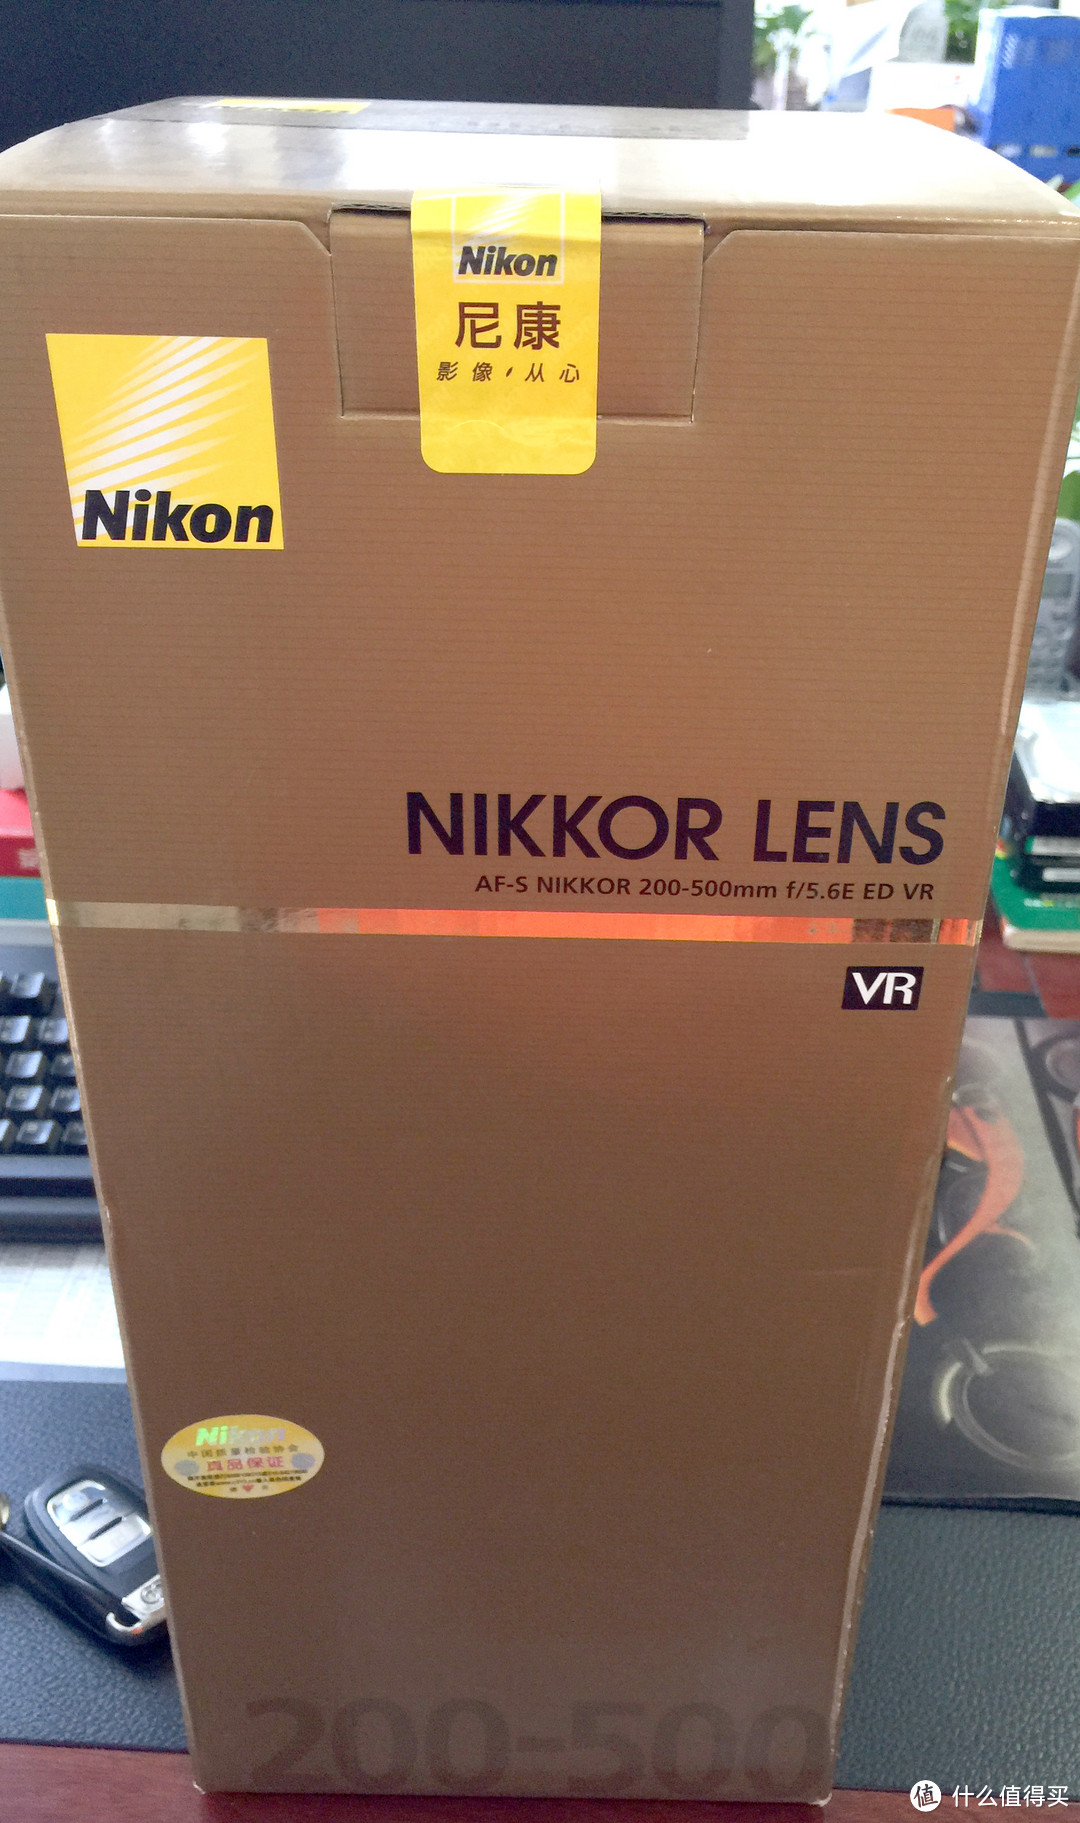 Nikon 尼康 AF-S NIKKOR 200-500mm F/5.6E ED VR 镜头 主观评论